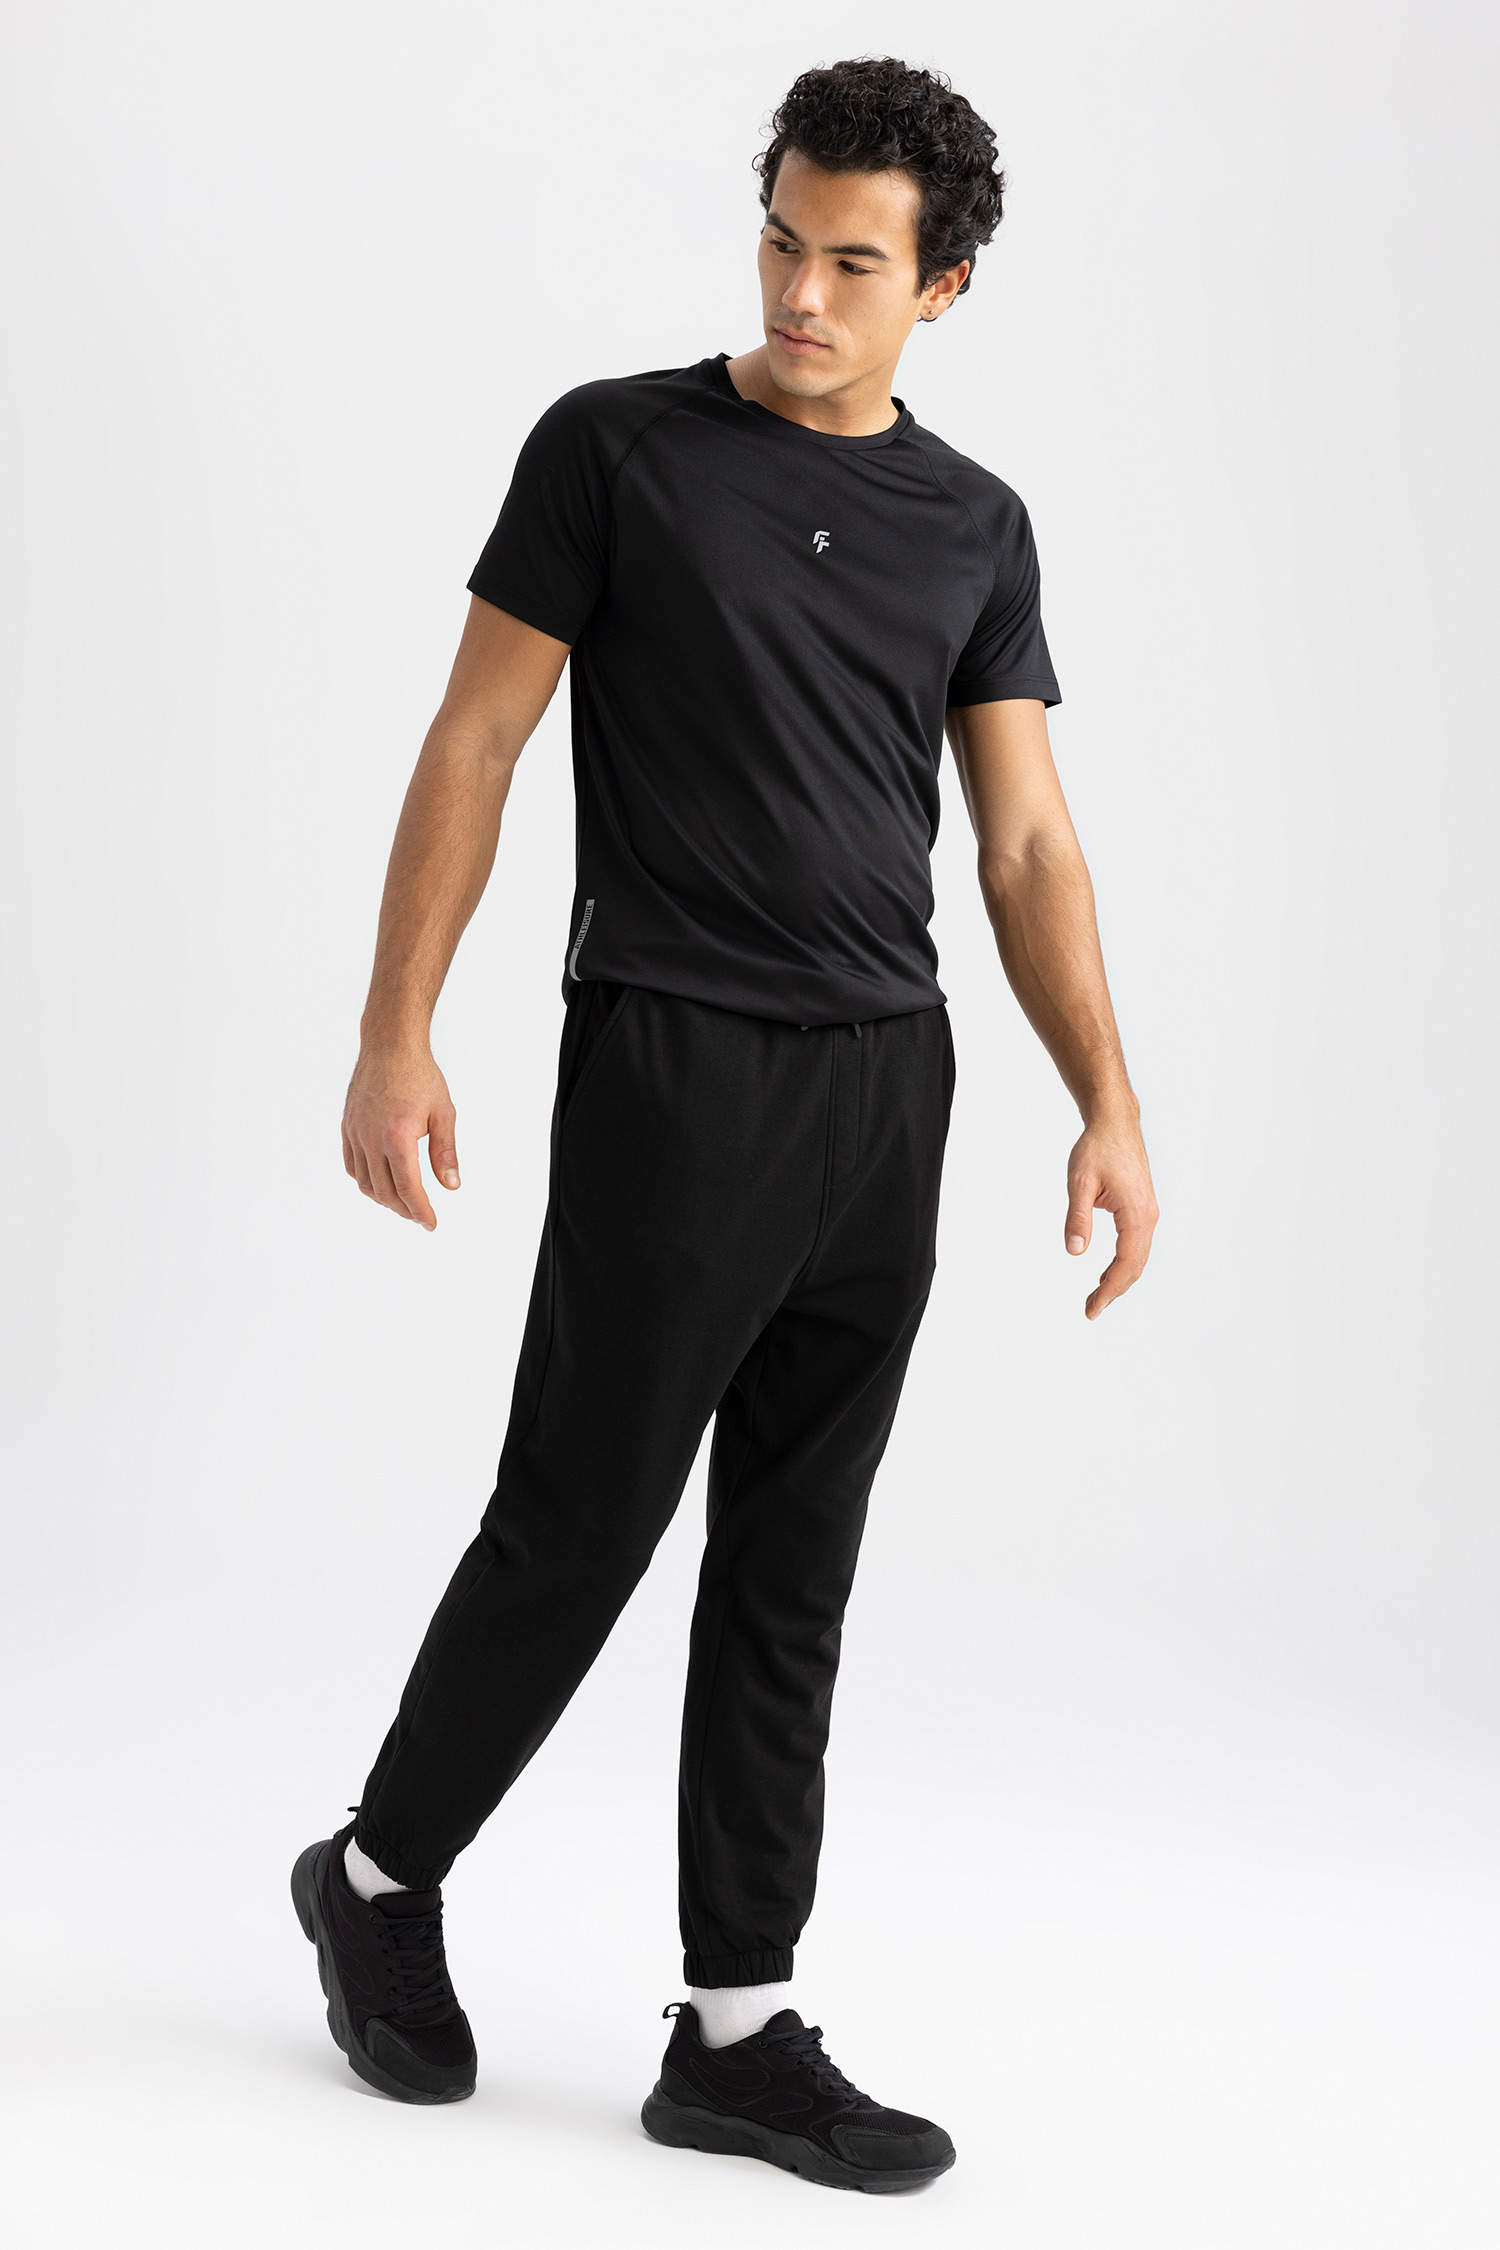 Survêtements Homme | Domyos Pantalon jogging Fitness Ceinture Plate Noir  Noir — Dufur